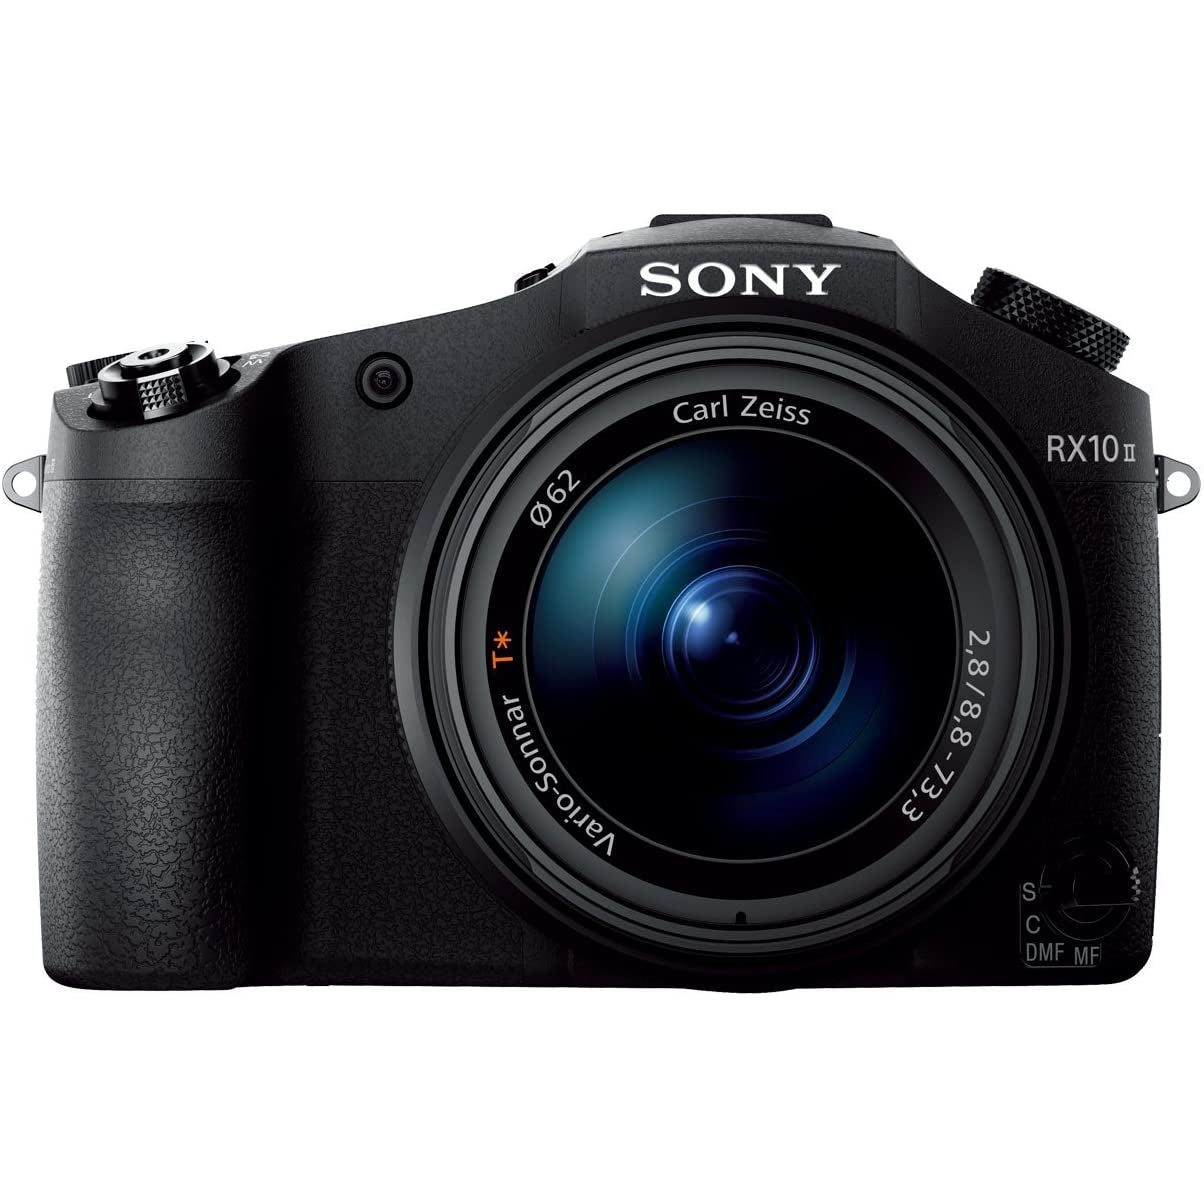 Sony Cyber-Shot DSC-RX10 II Bridge Camera